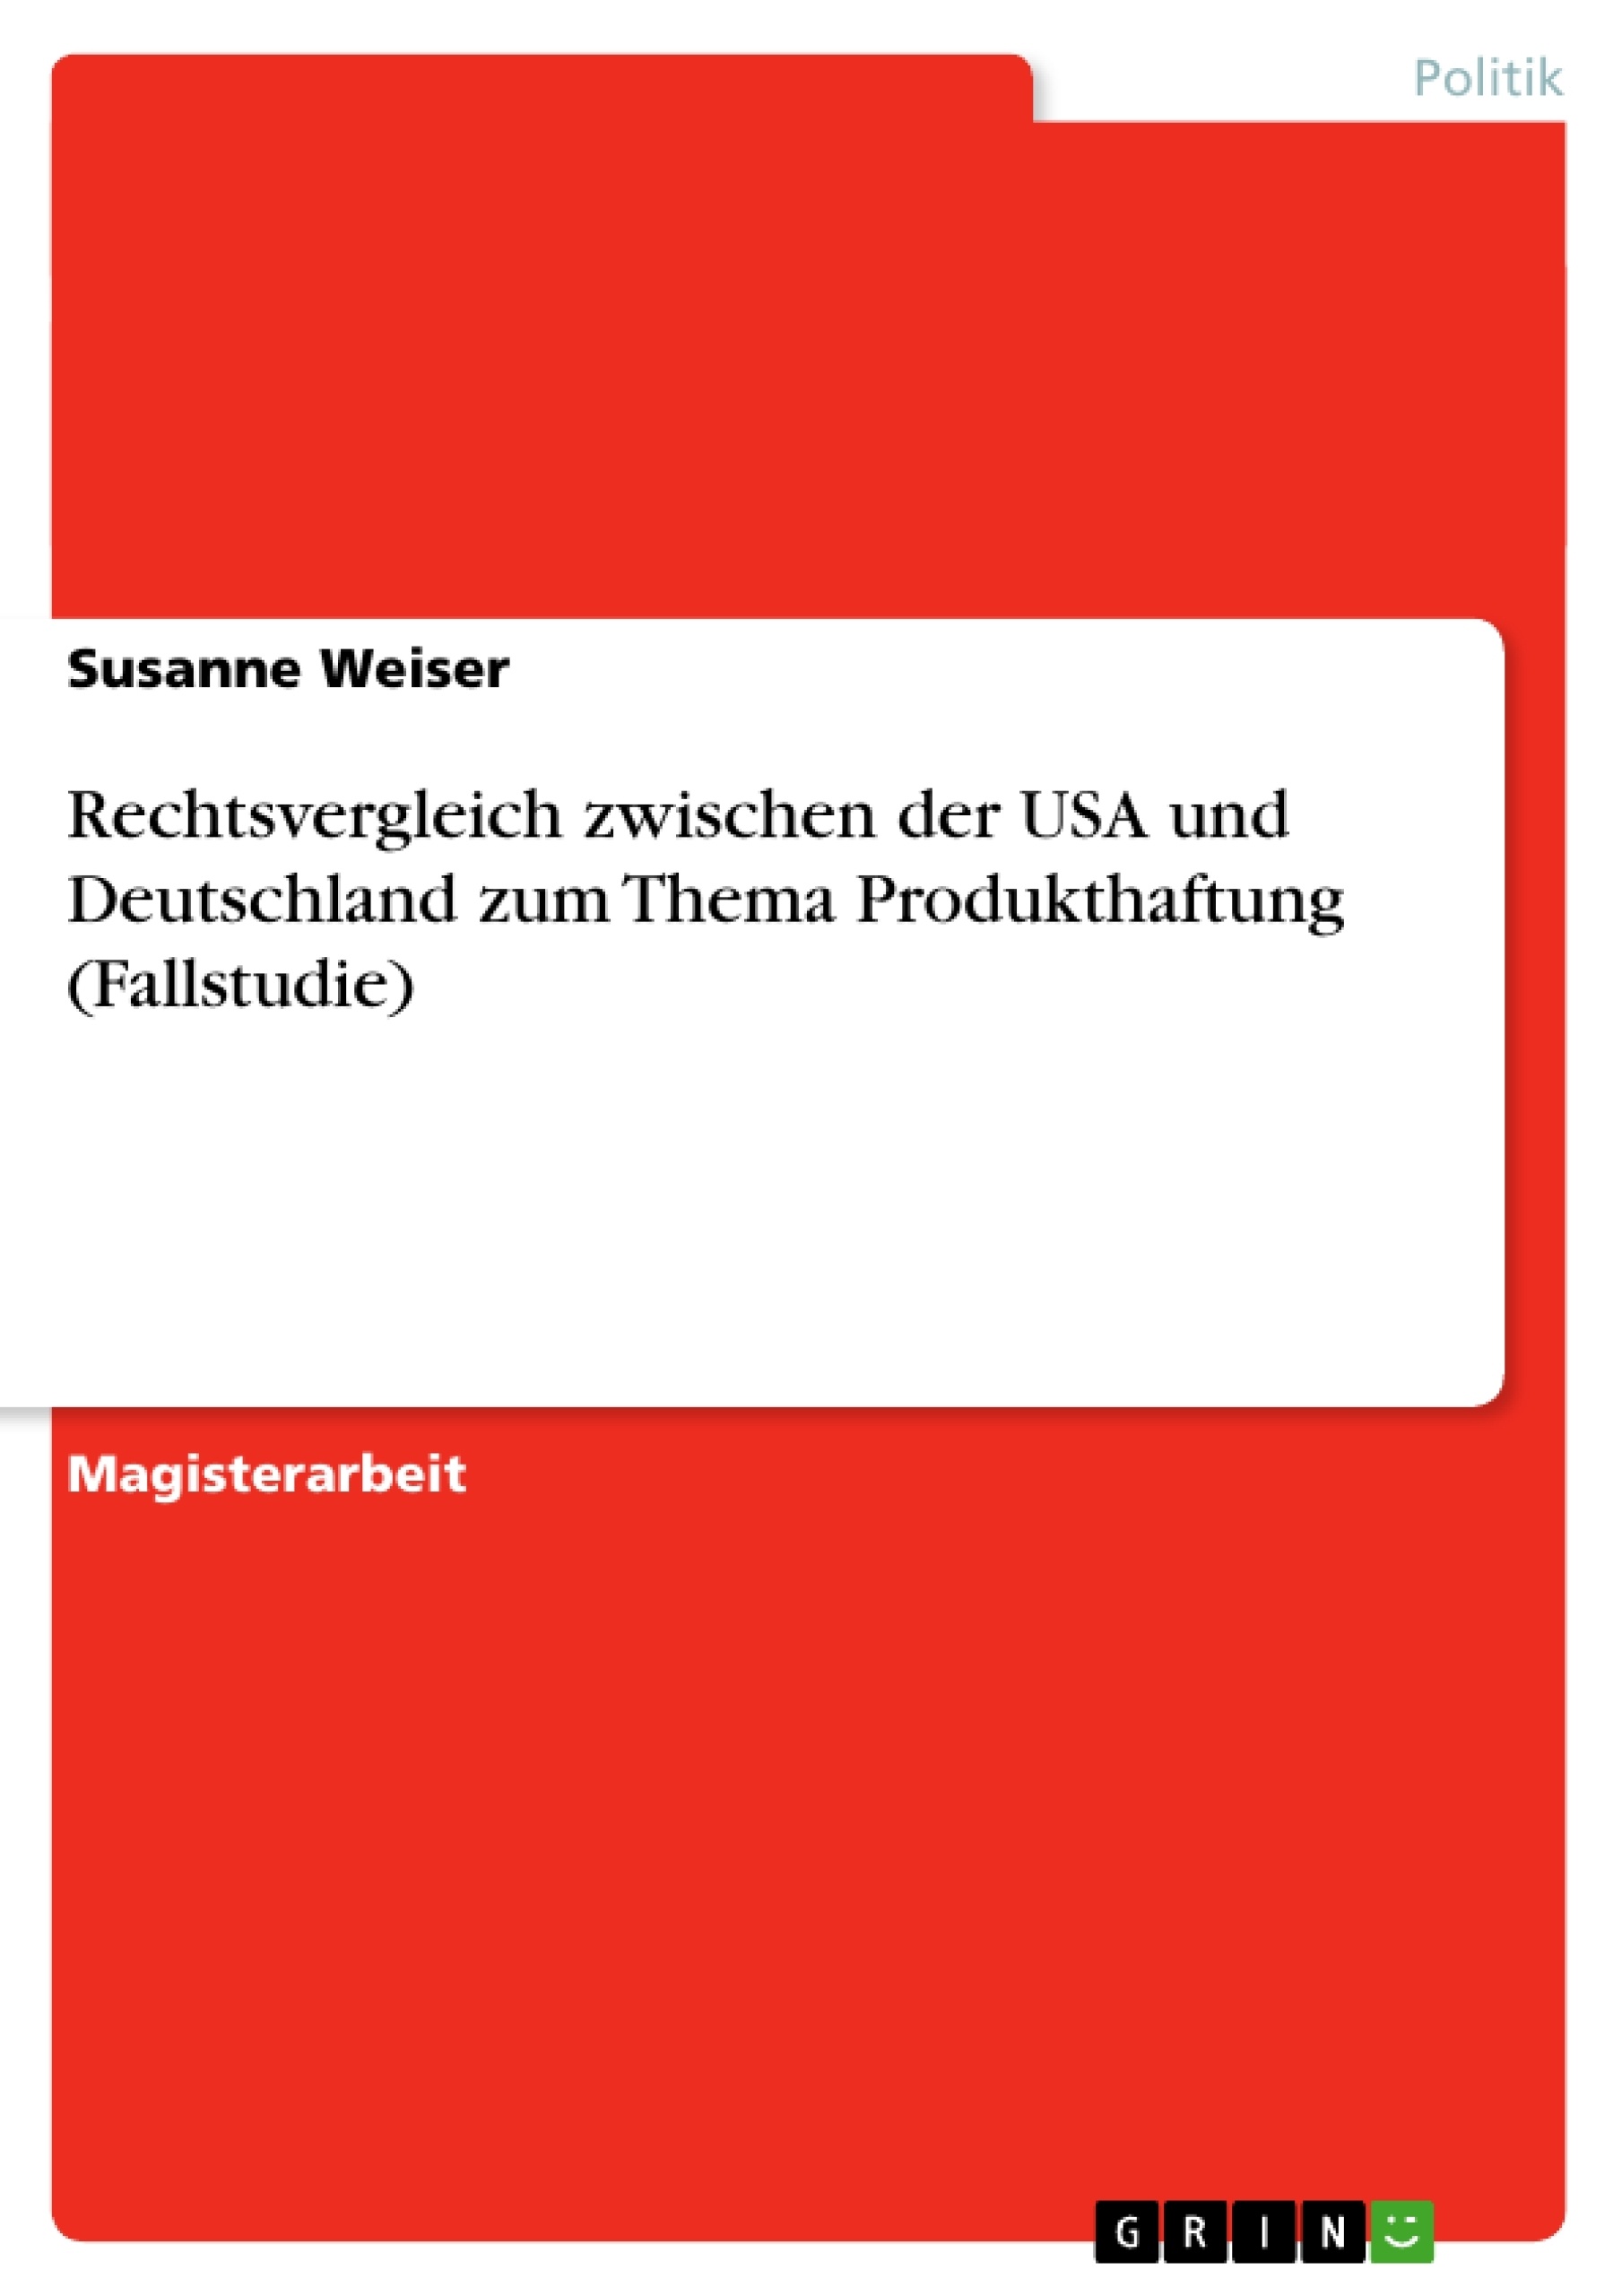 Title: Rechtsvergleich zwischen der USA und Deutschland zum Thema Produkthaftung (Fallstudie)